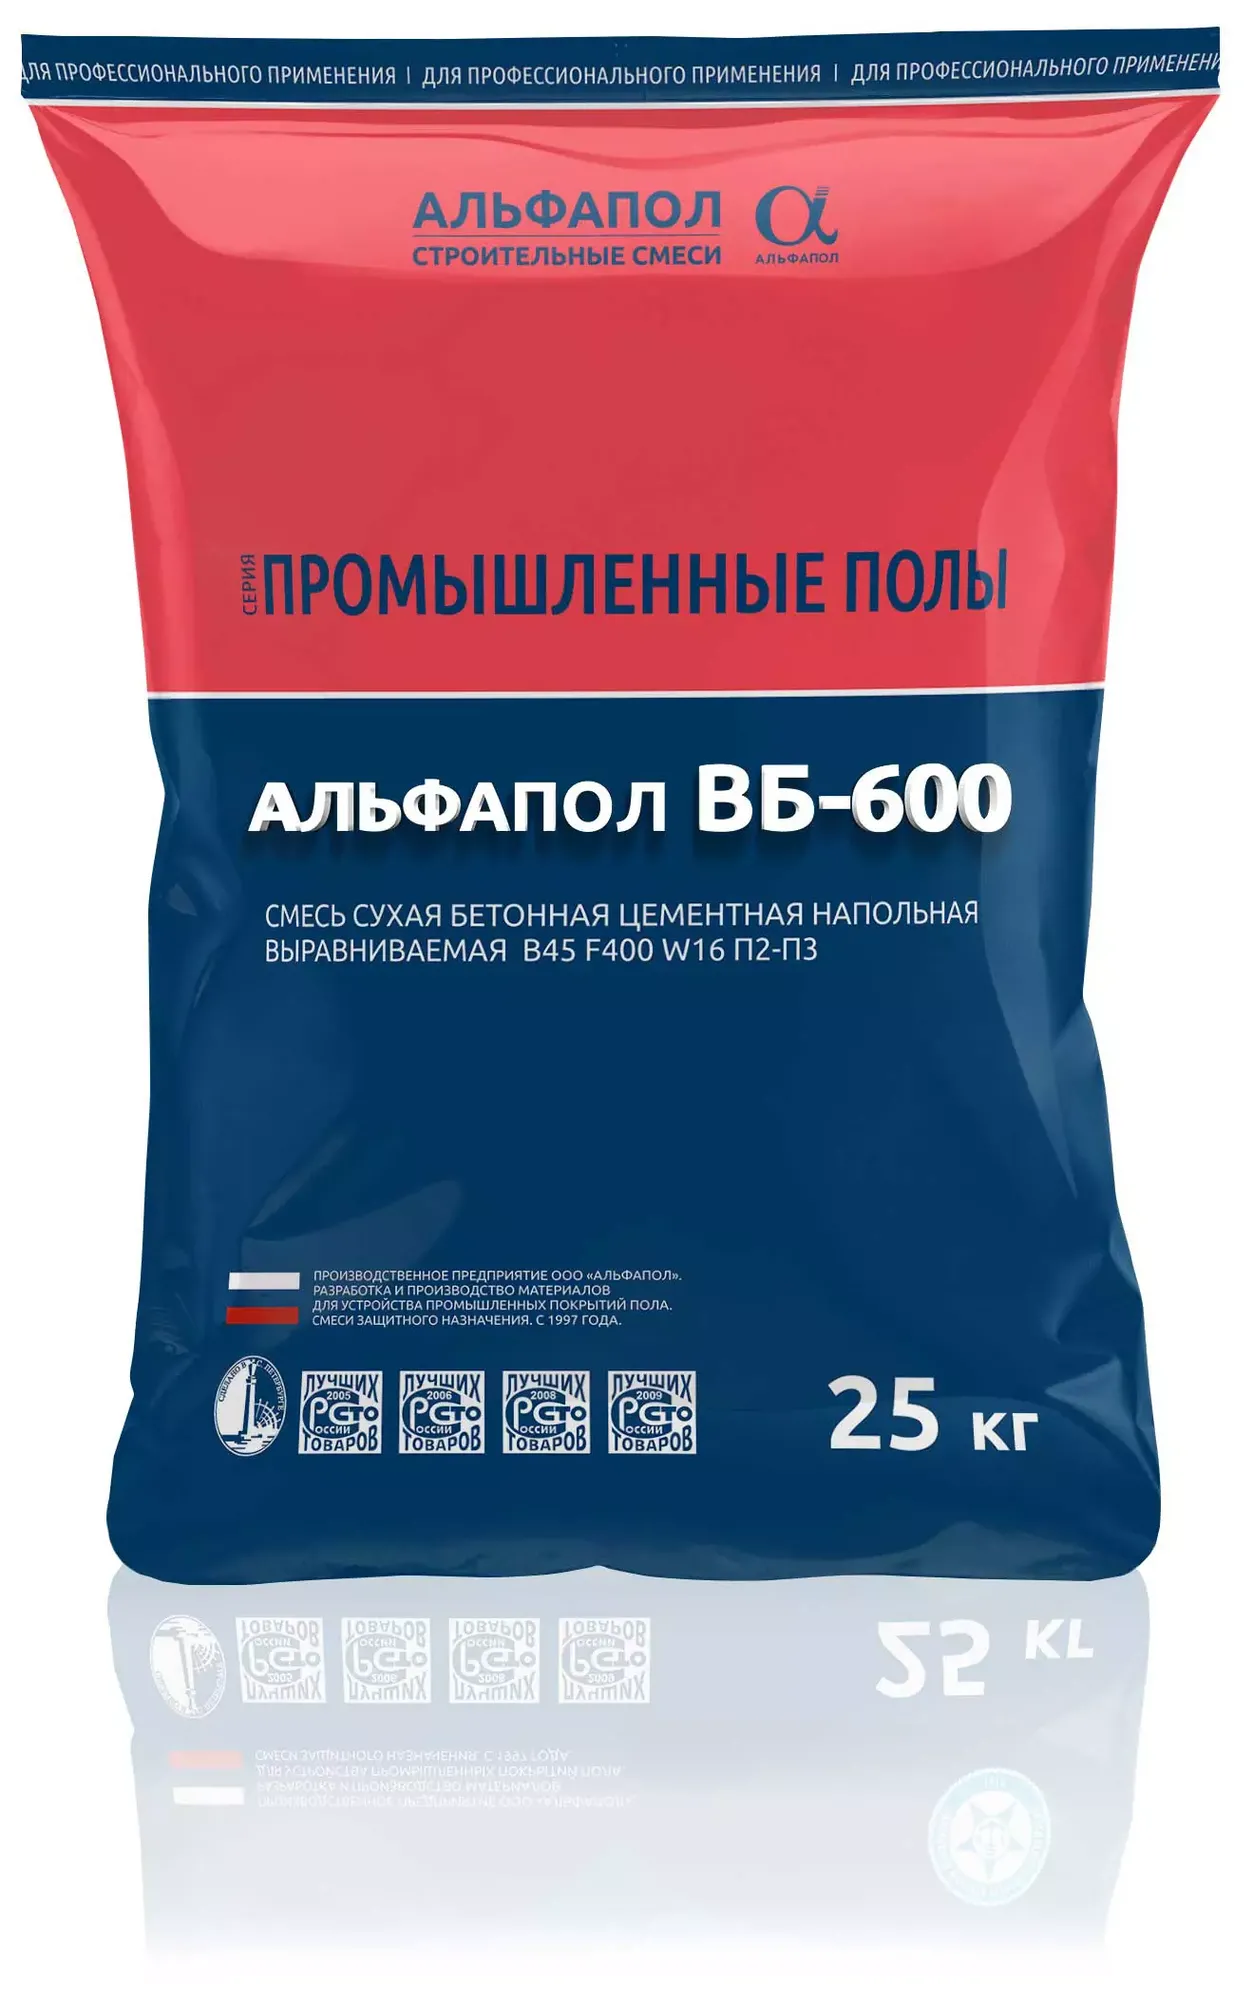 АЛЬФАПОЛ ВБ-600 износоустойчивый маслобензостойкий промышленный пол B45 W16